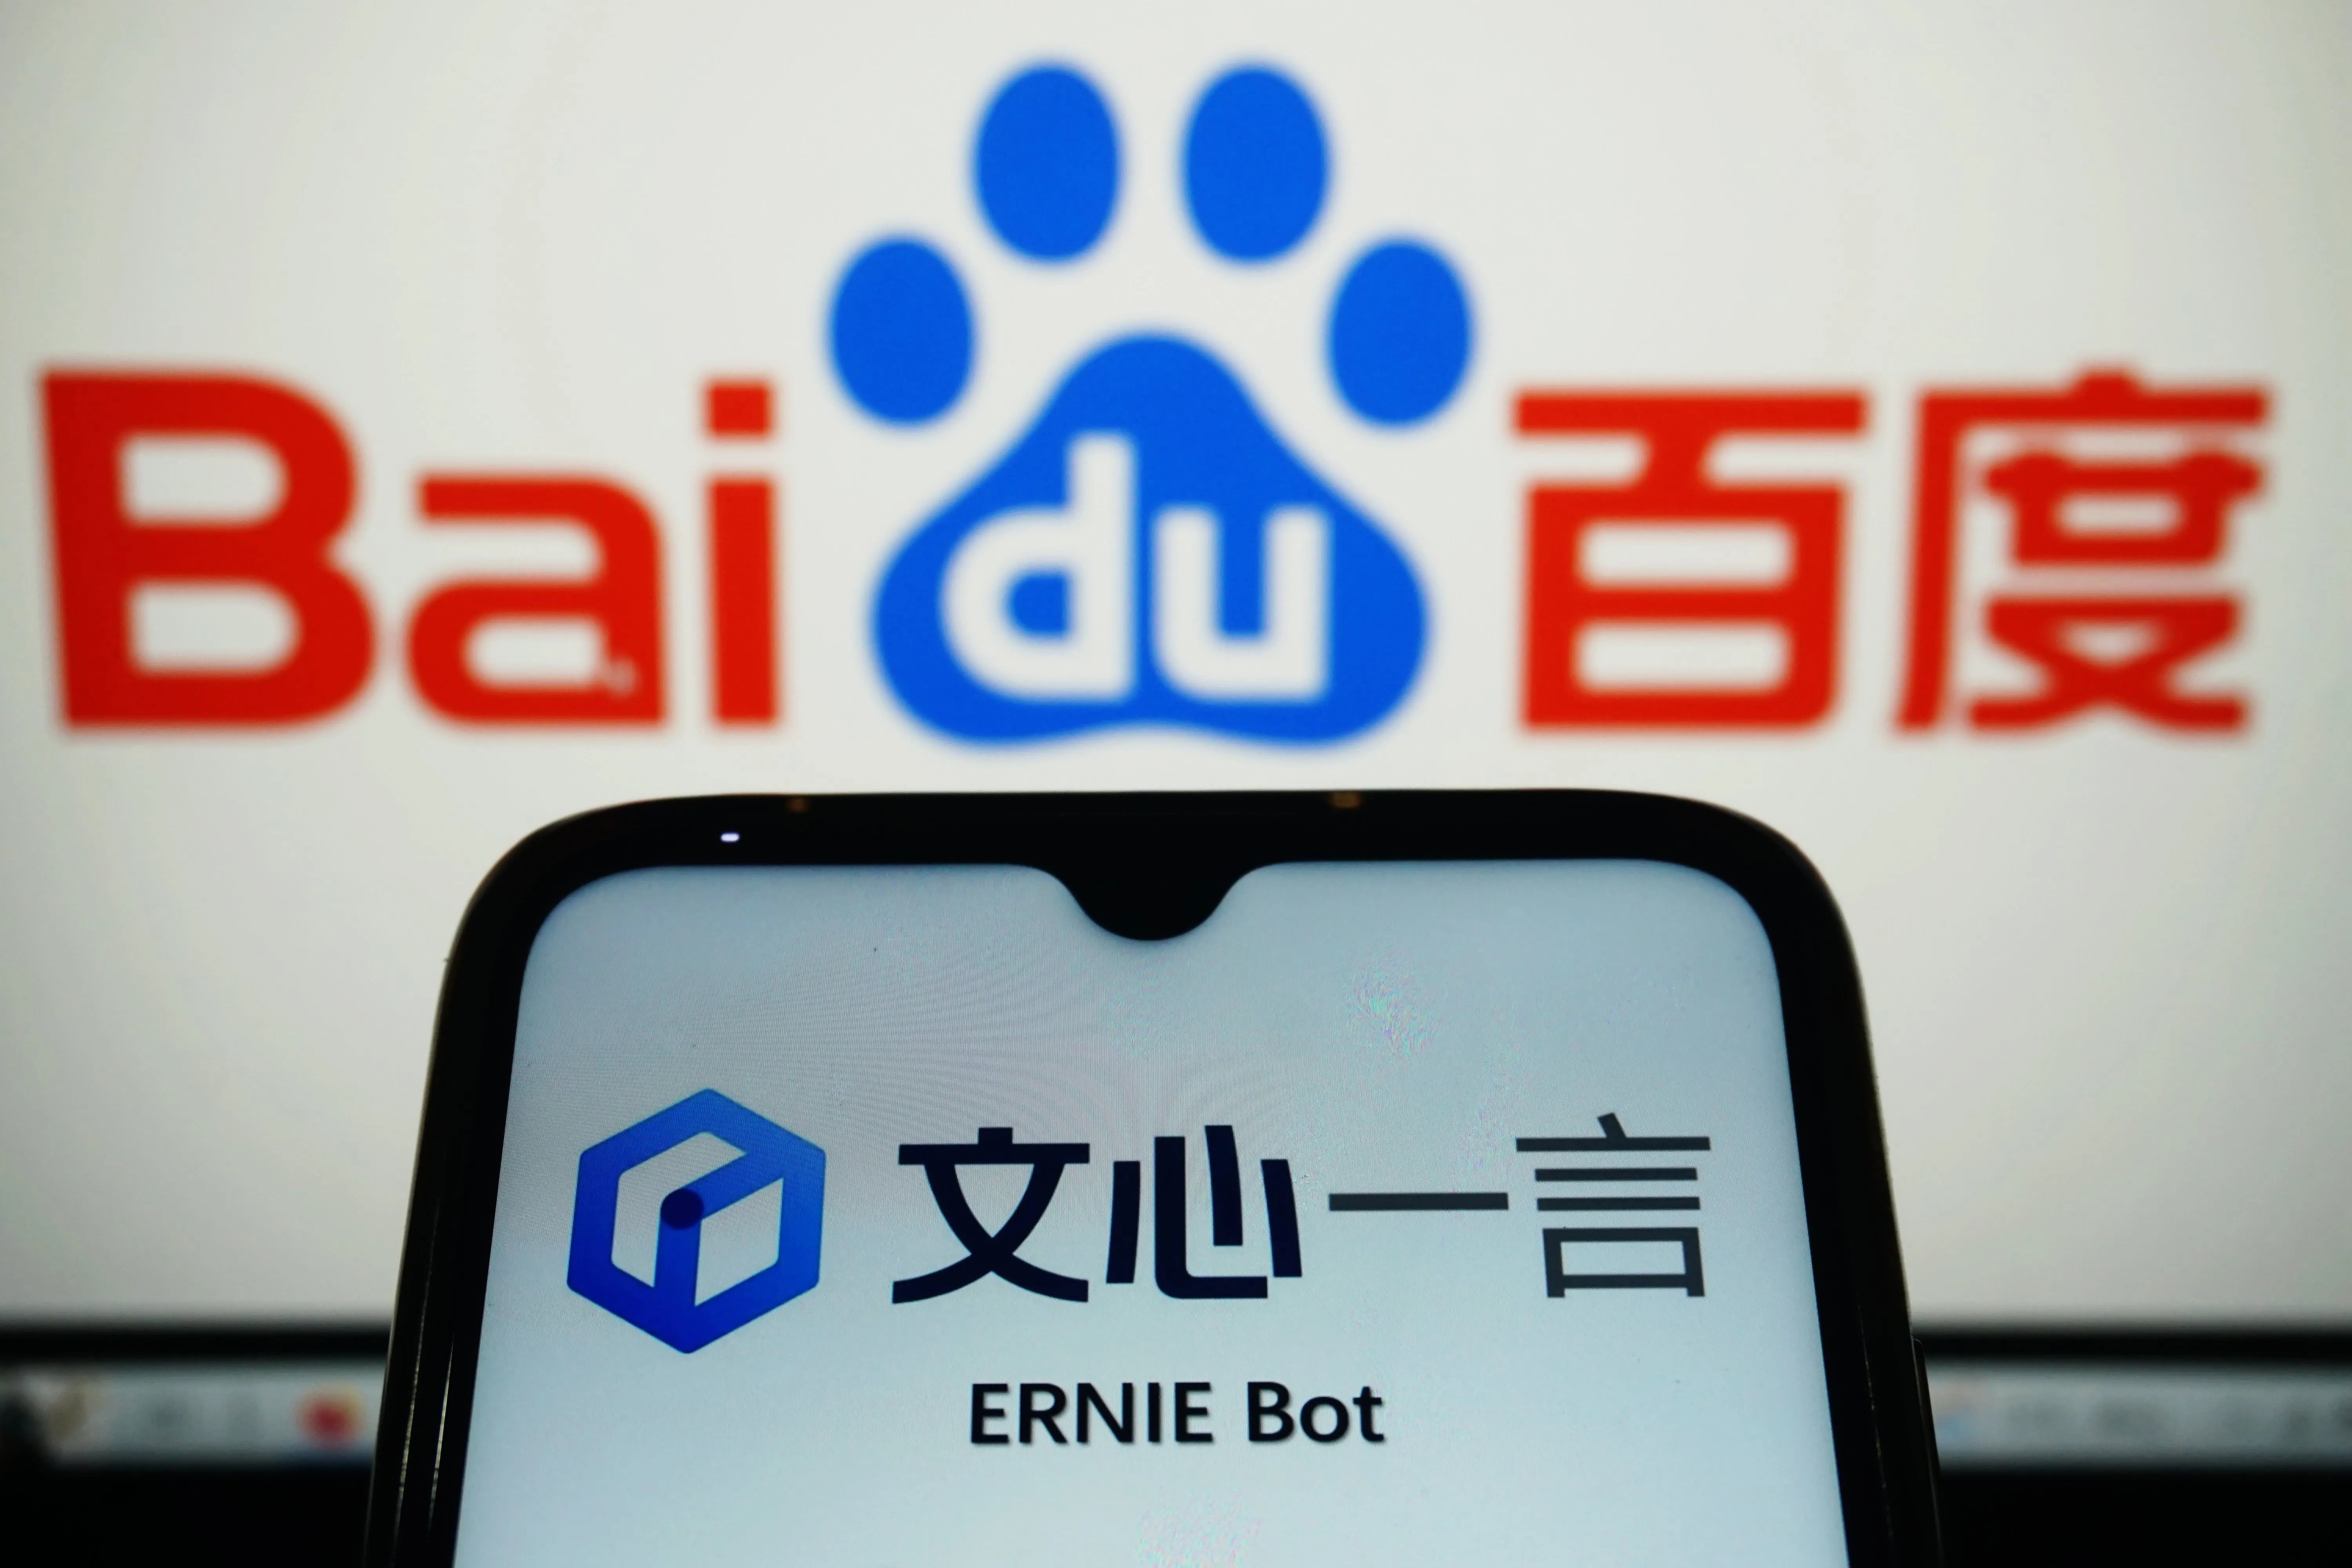 Le chatbot Ernie Bot de Baidu a attiré 200 millions d'utilisateurs